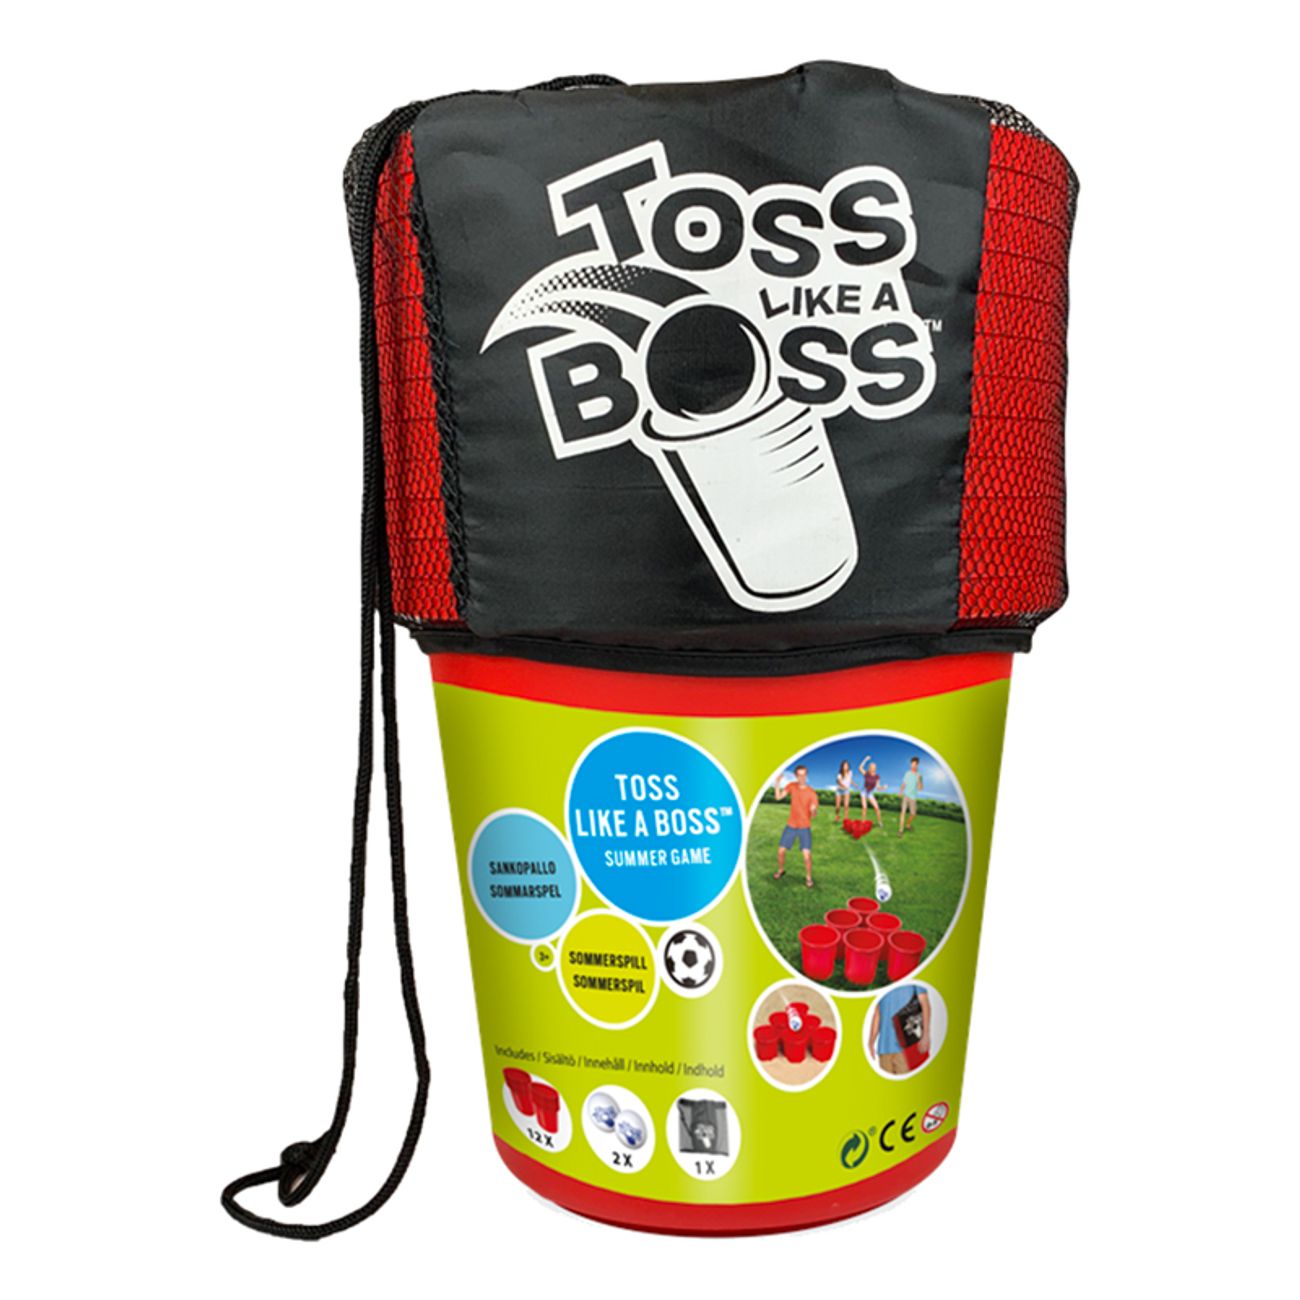 toss-like-a-boss-tradgardsspel-74647-2